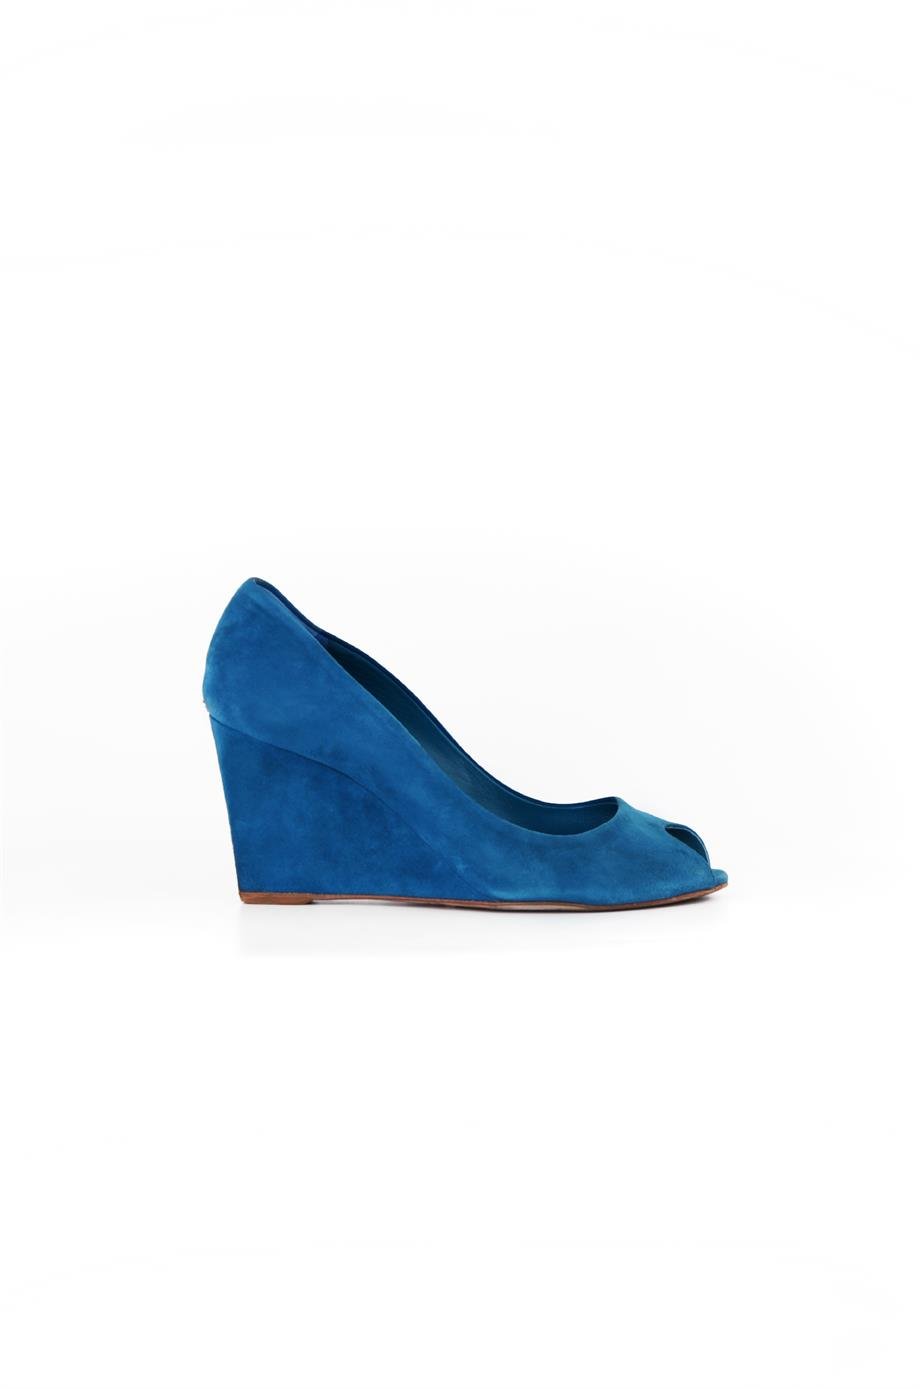 Christian Dior Mavi Renk 39 Beden Kadın Topuklu Ayakkabı